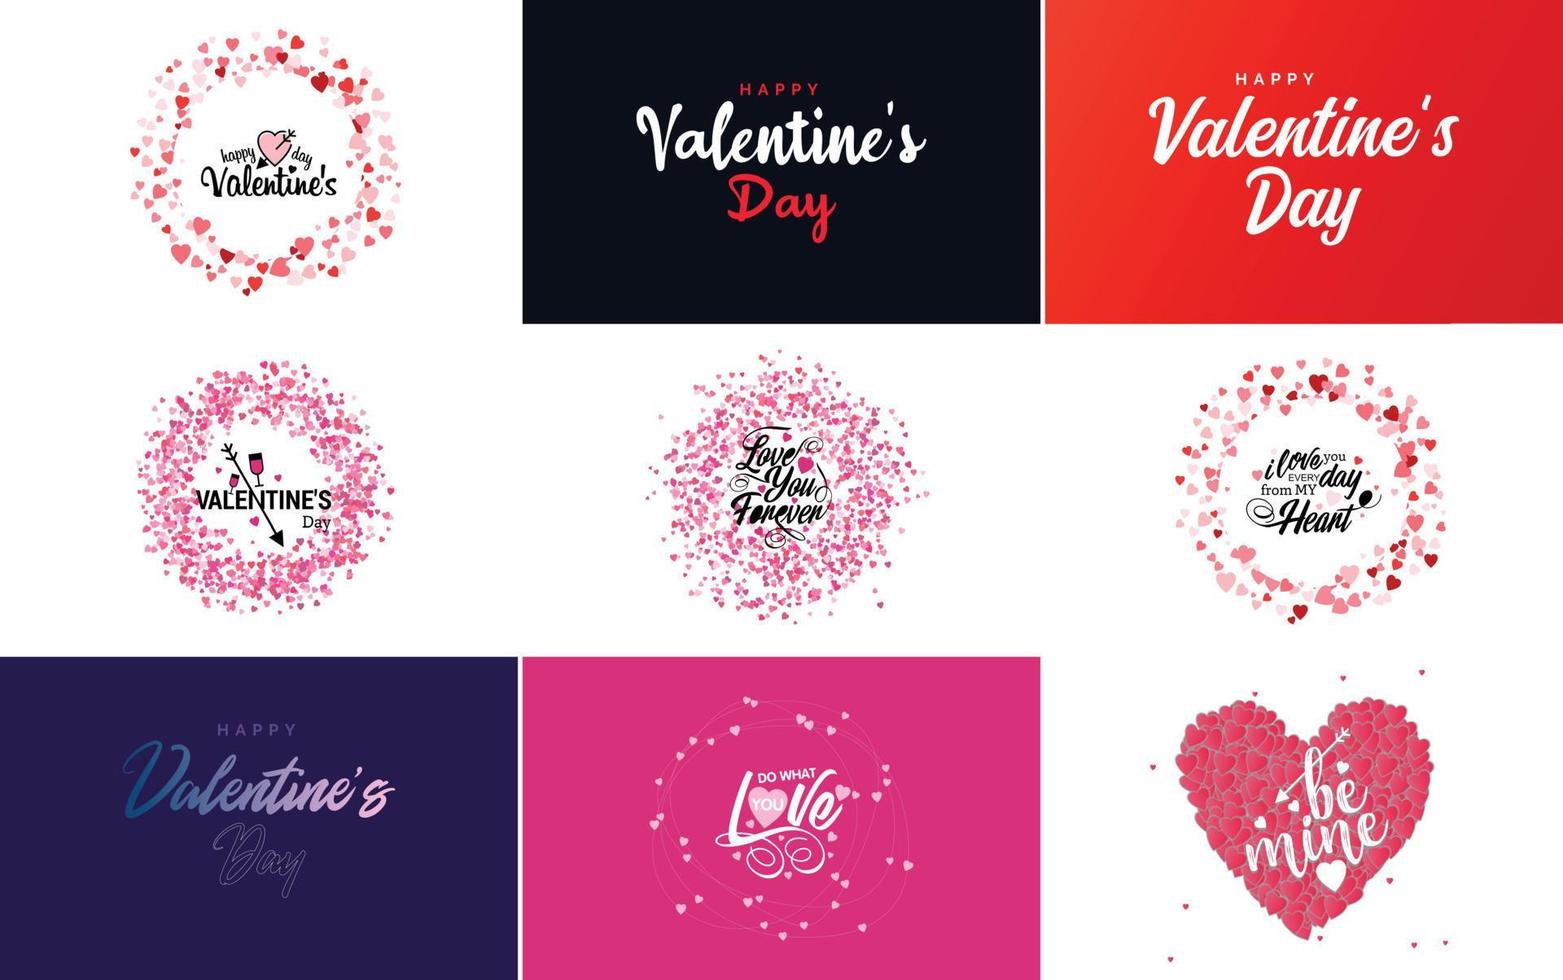 gelukkig Valentijnsdag dag banier sjabloon met een romantisch thema en een rood kleur regeling vector